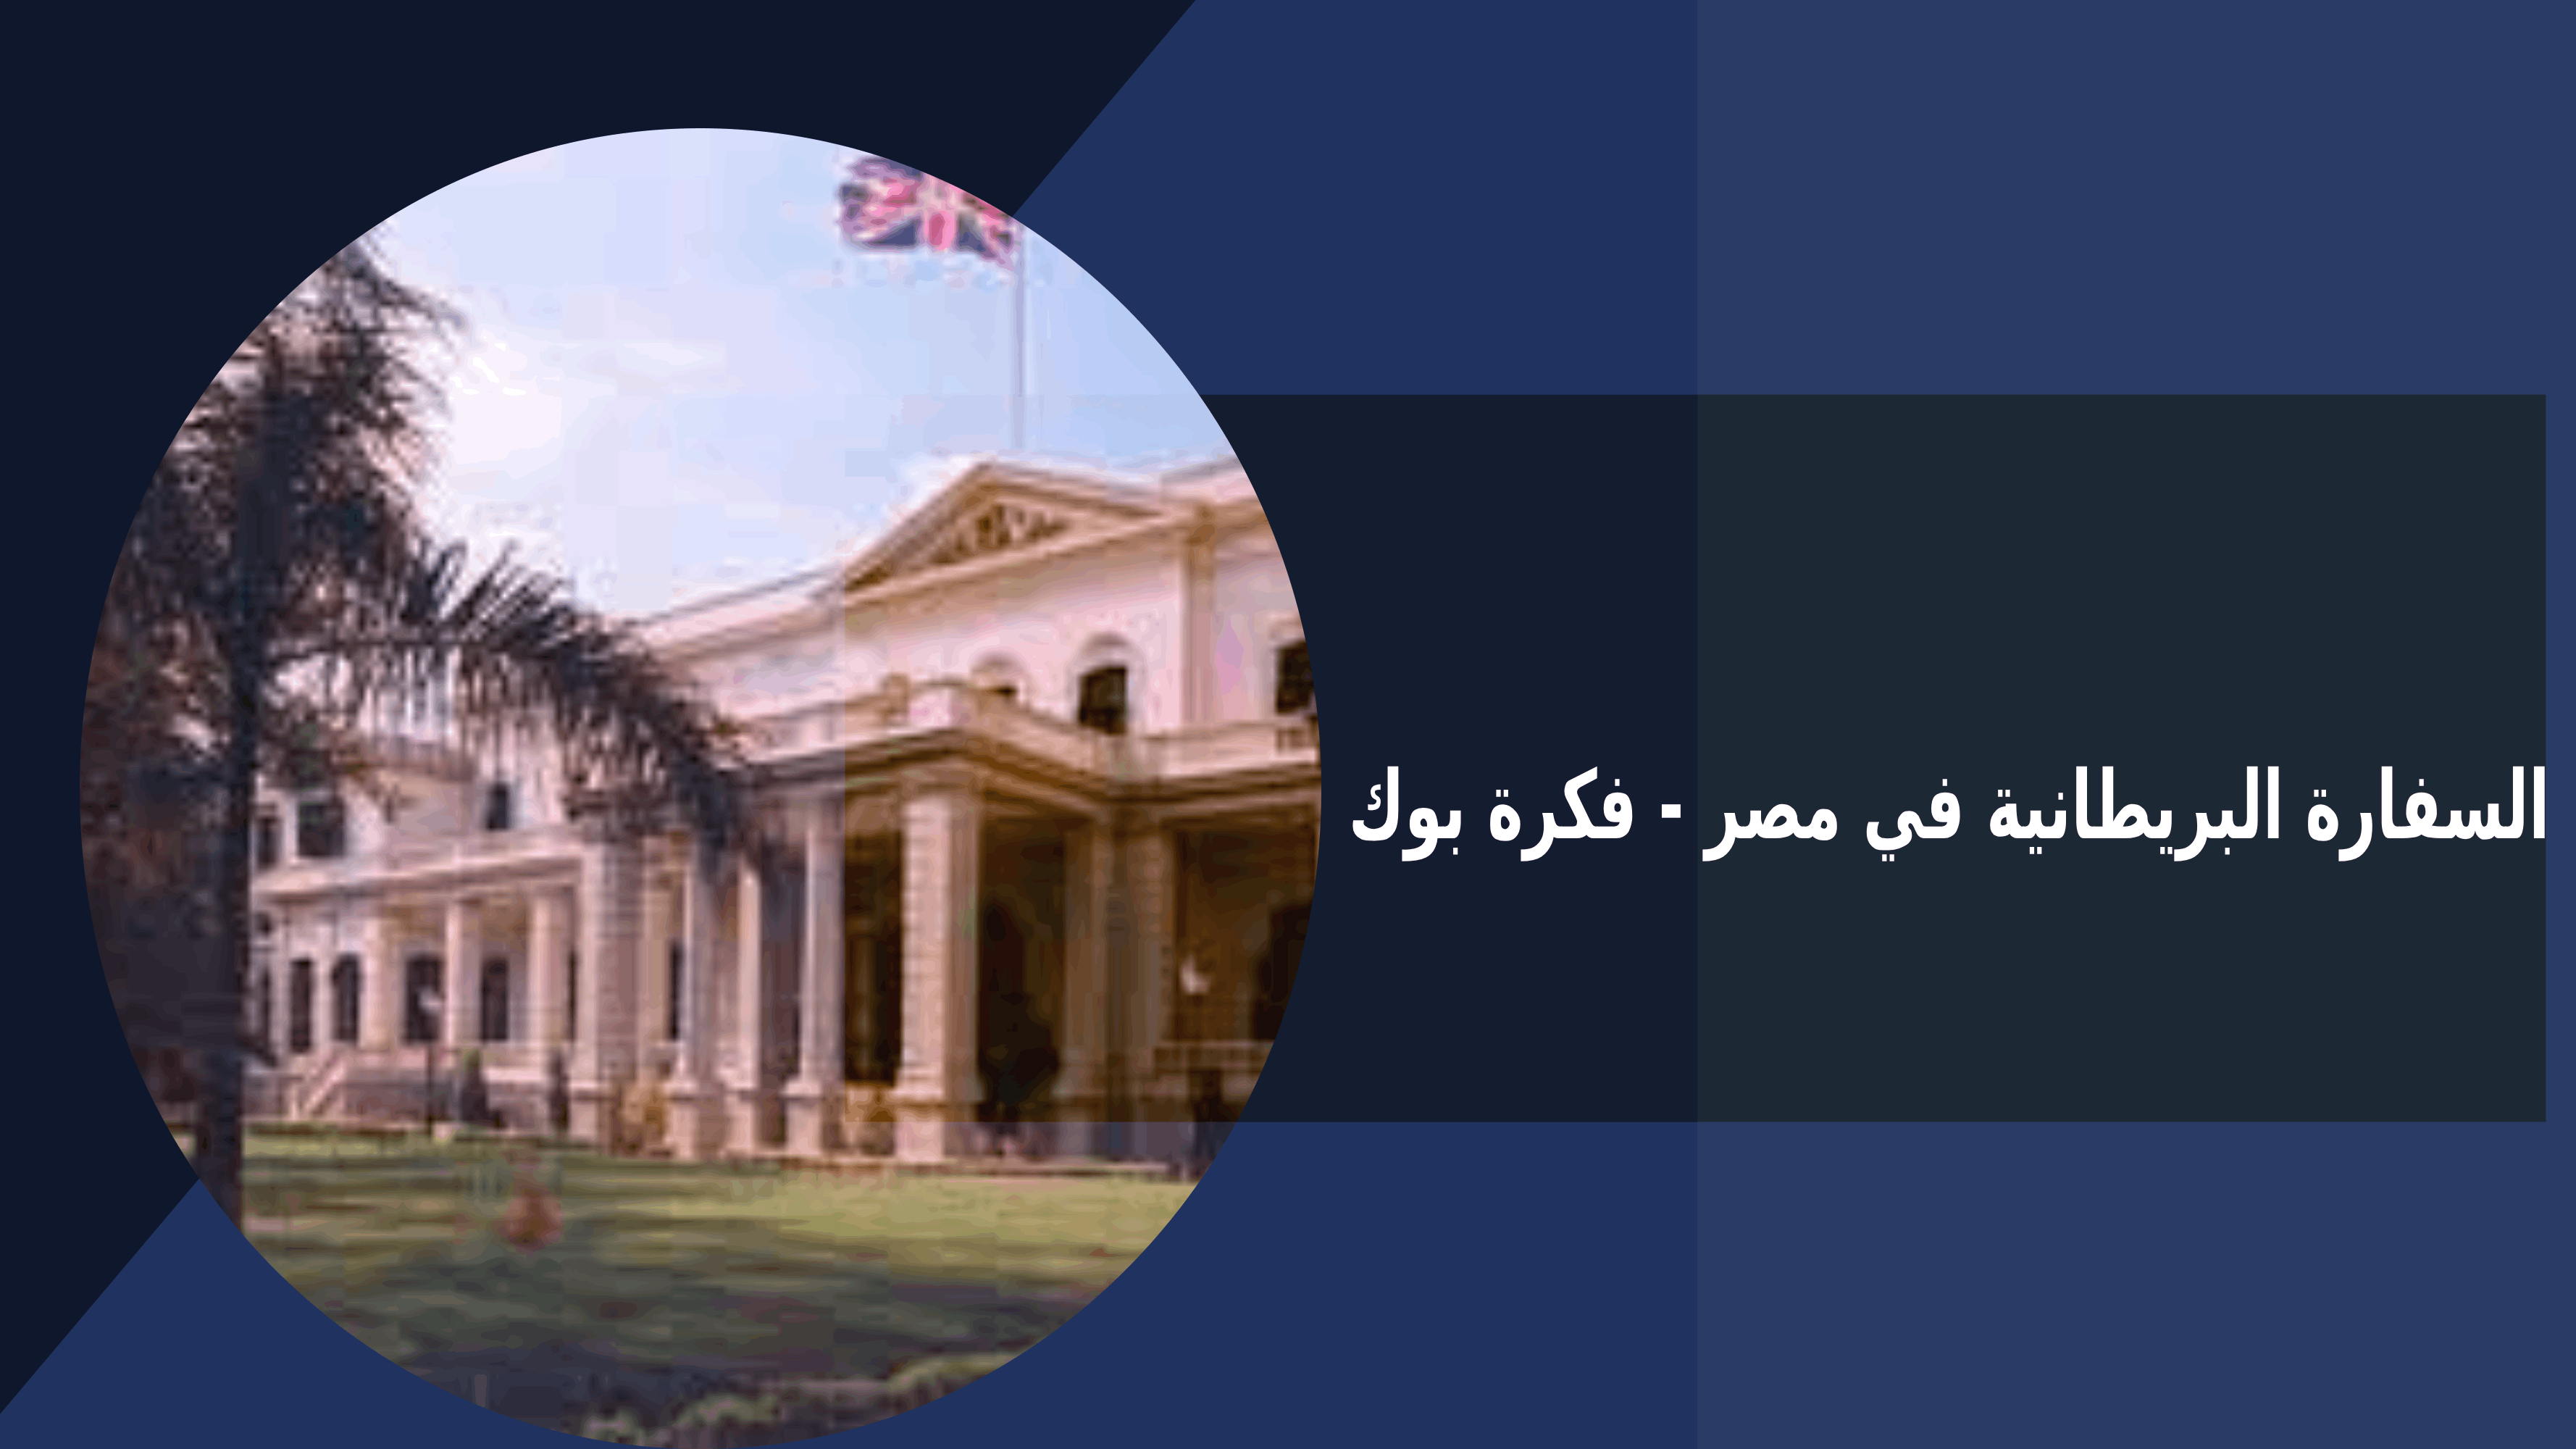 السفارة البريطانية في مصر - فكرة بوك